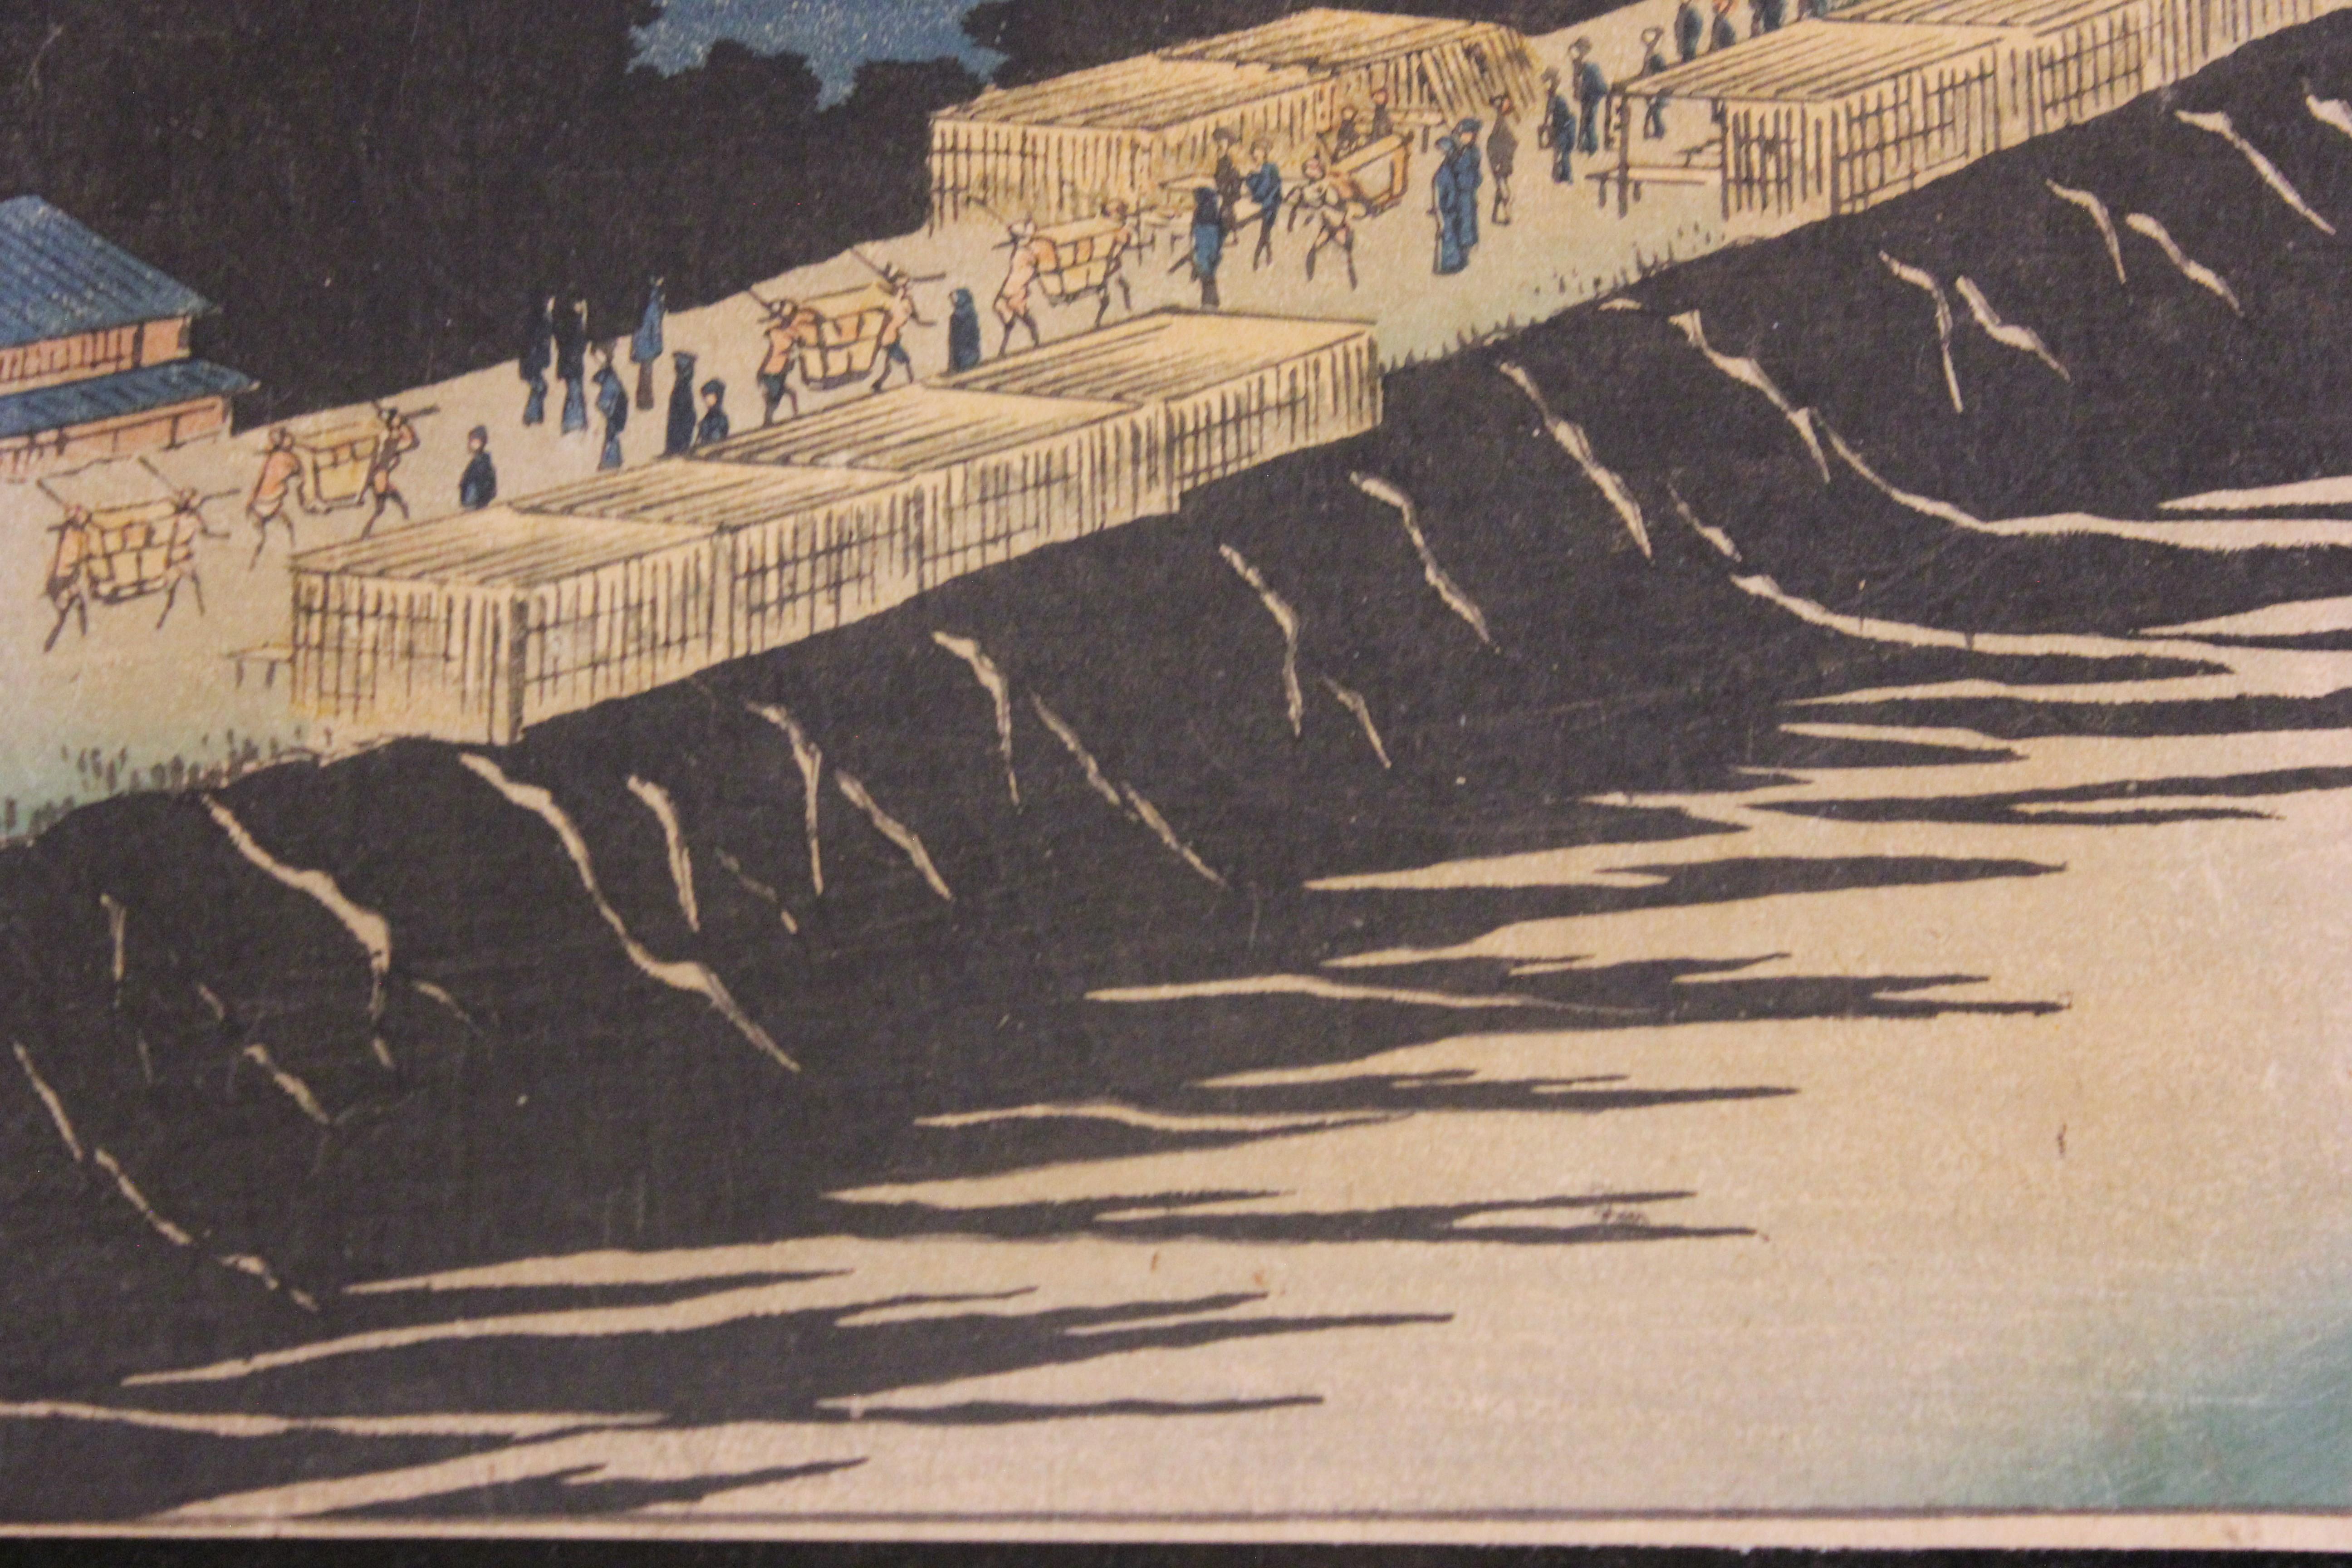 Holzschnitt aus der Edo-Zeit. Der Druck war Teil einer Serie:: die Hiroshige mit dem Titel „One Hundred Famous Views of Edo“ erstellte. Der Holzschnitt ist auf Reispapier gedruckt. 
Der Druck ist nicht gerahmt. 

Biografie des Künstlers: Hiroshige